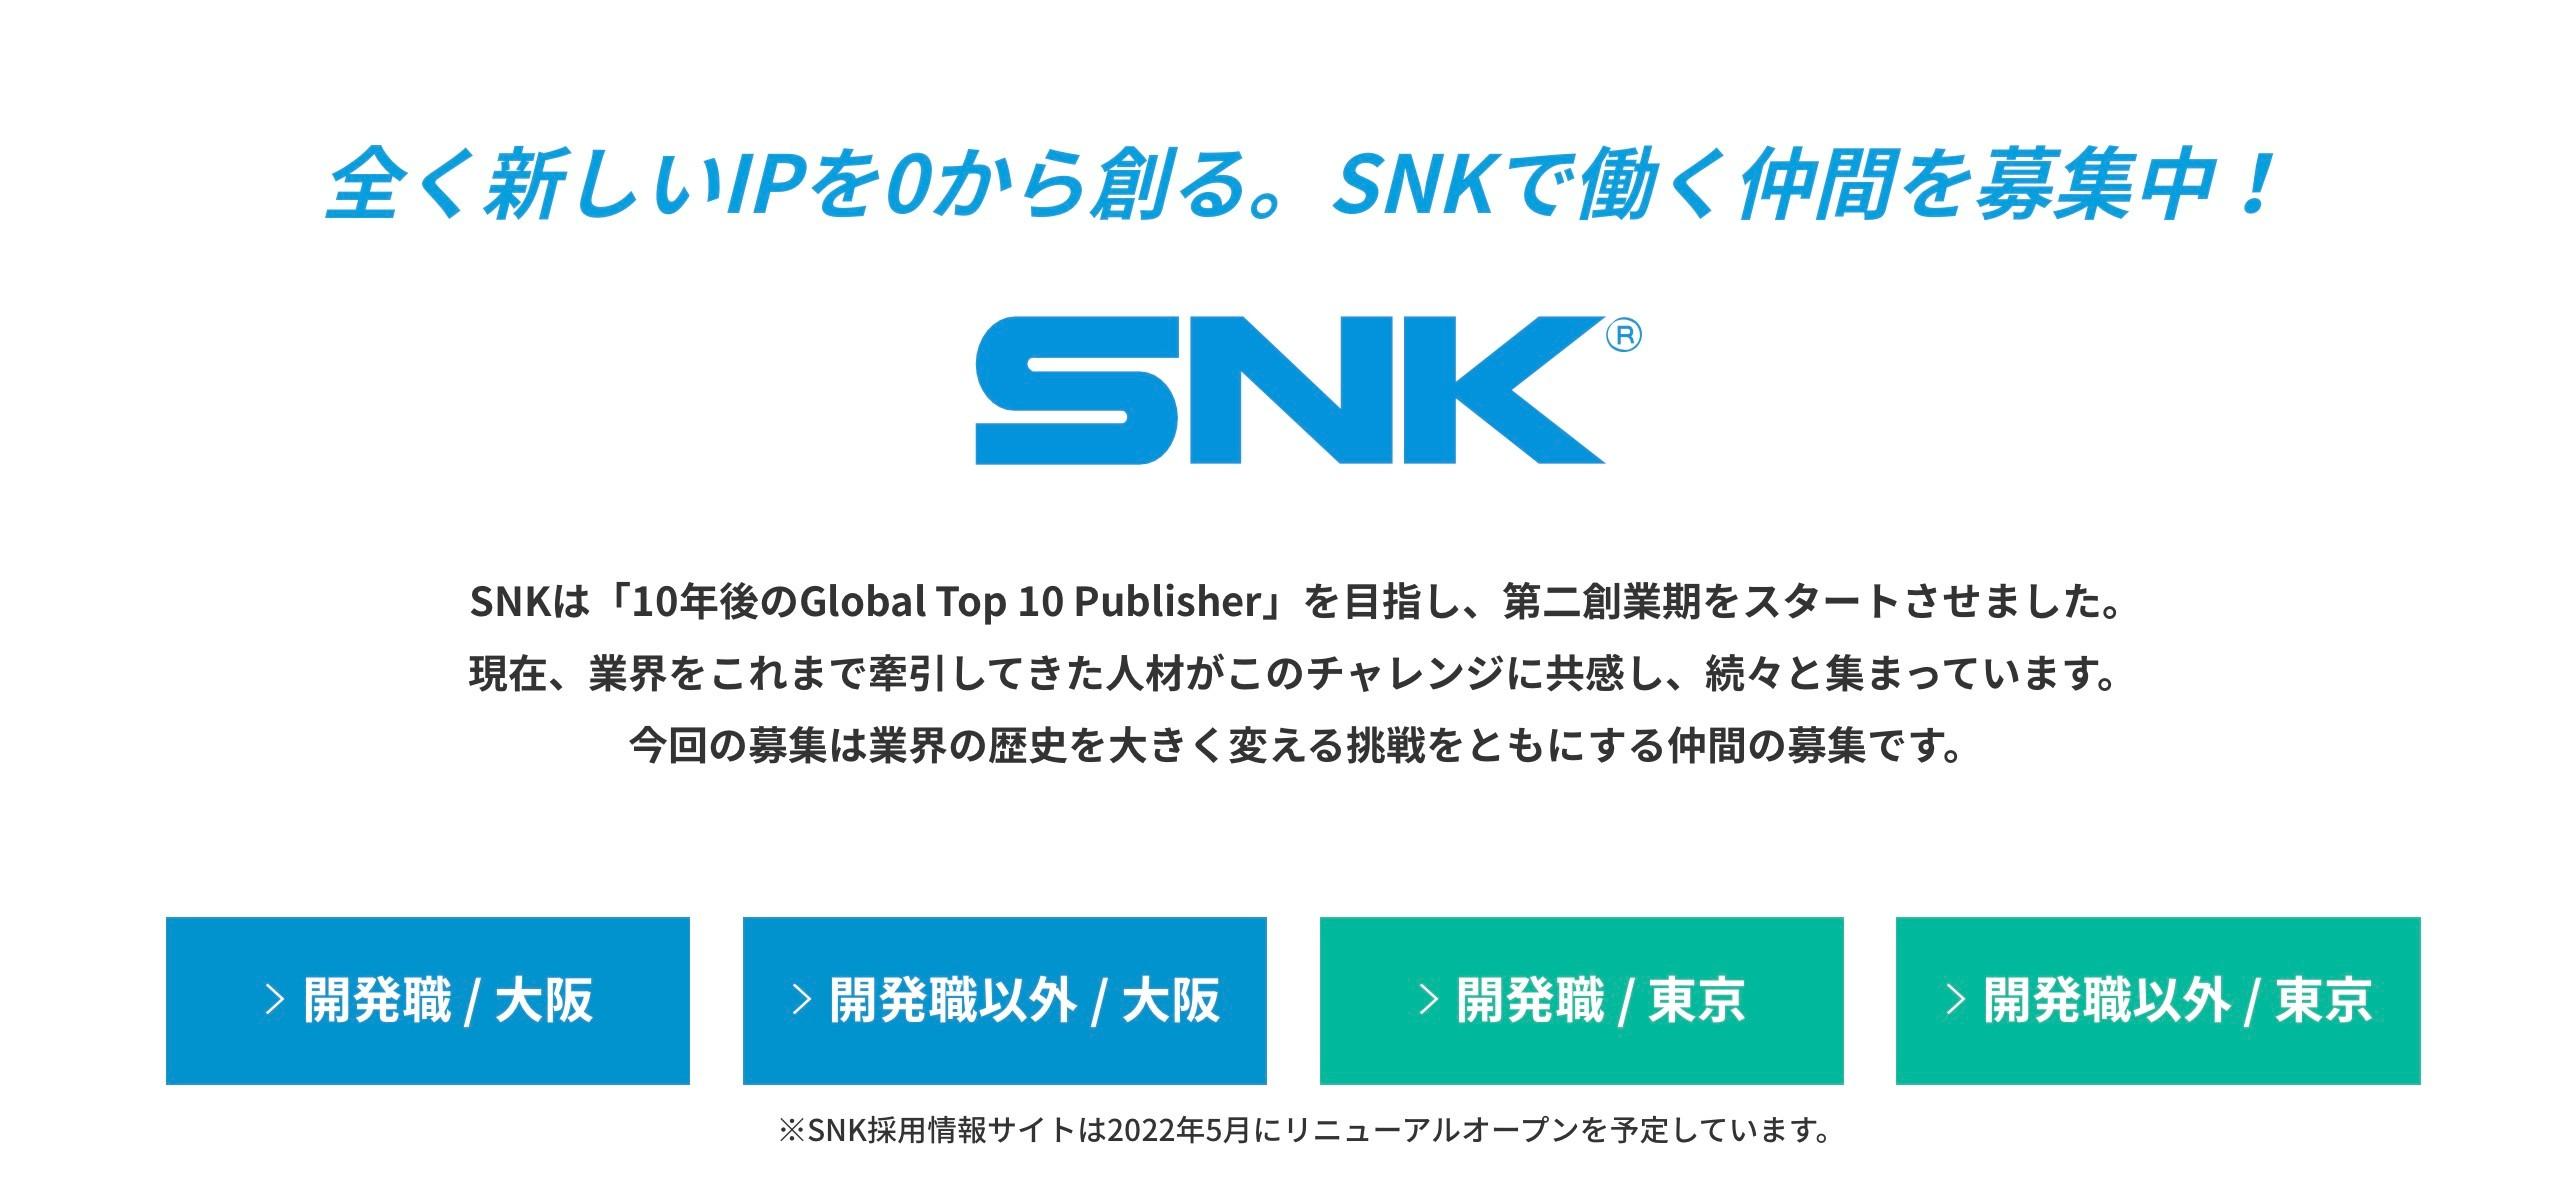 換了有錢老闆 SNK大招聘目標成全球前十遊戲商